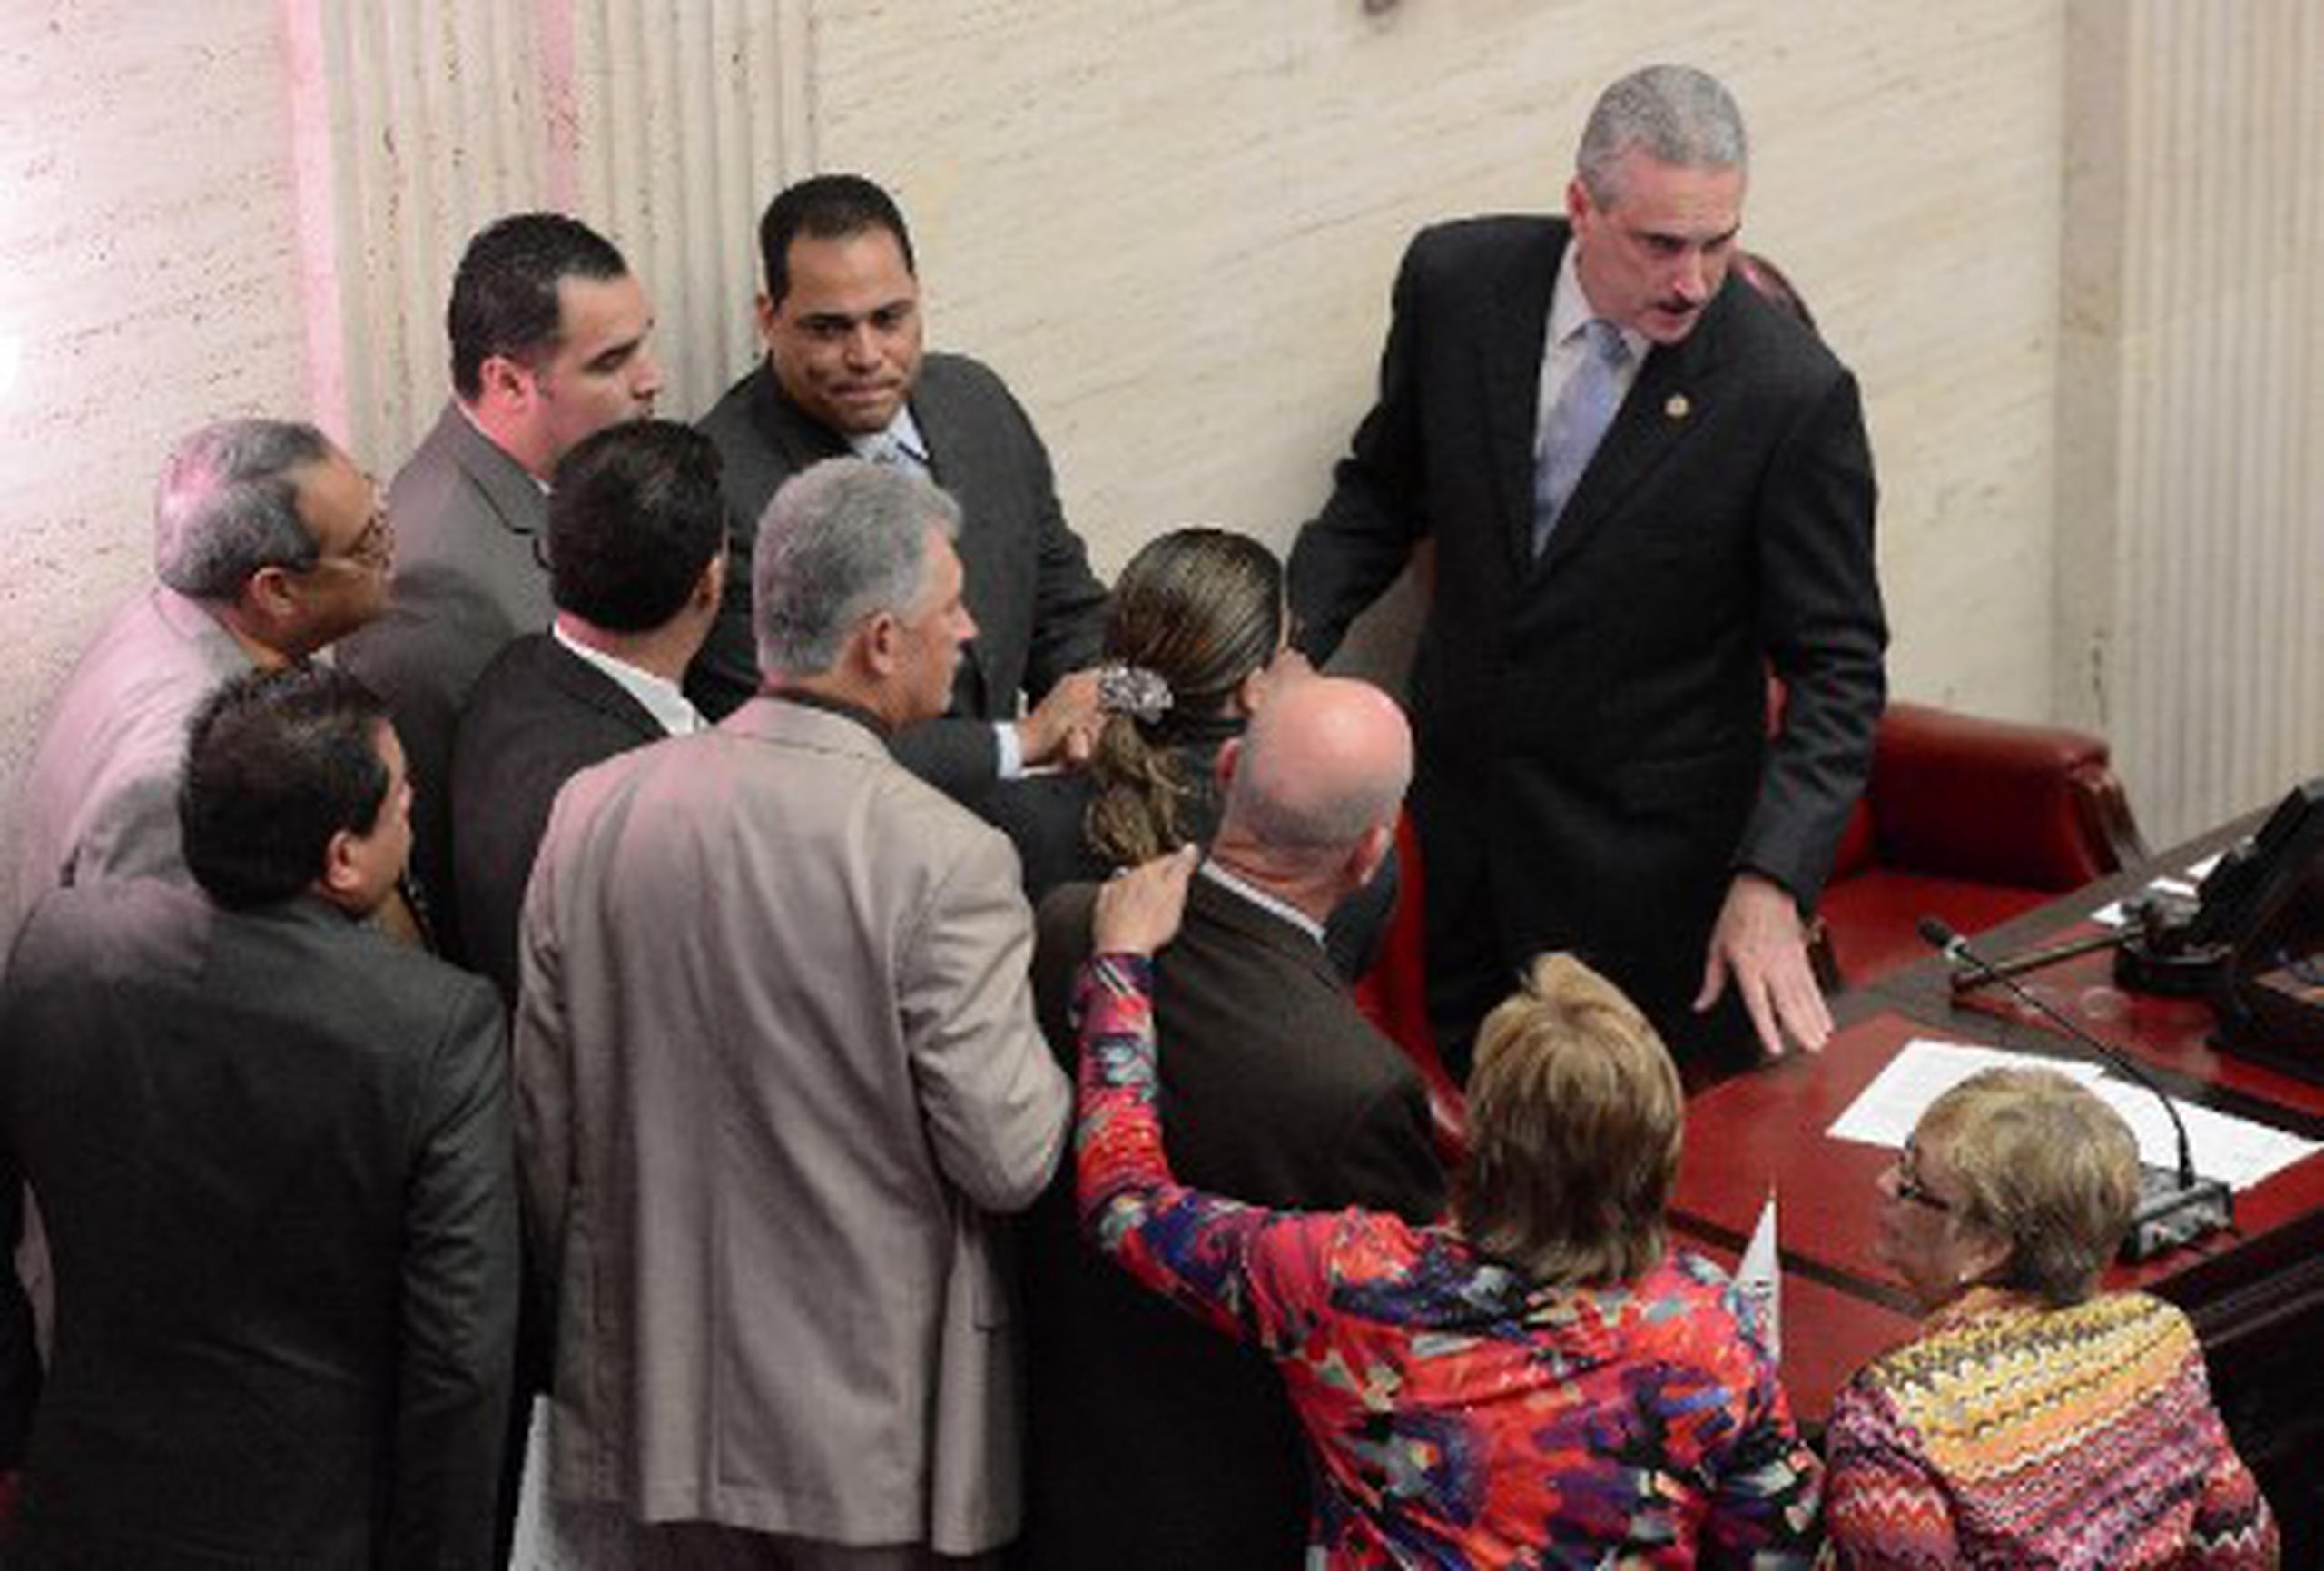 Celebración del segundo día de sesión extraordinaria del Senado de Puerto Rico, para evaluar nombramientos y otras medidas. (carlos.giusti@gfrmedia.com)